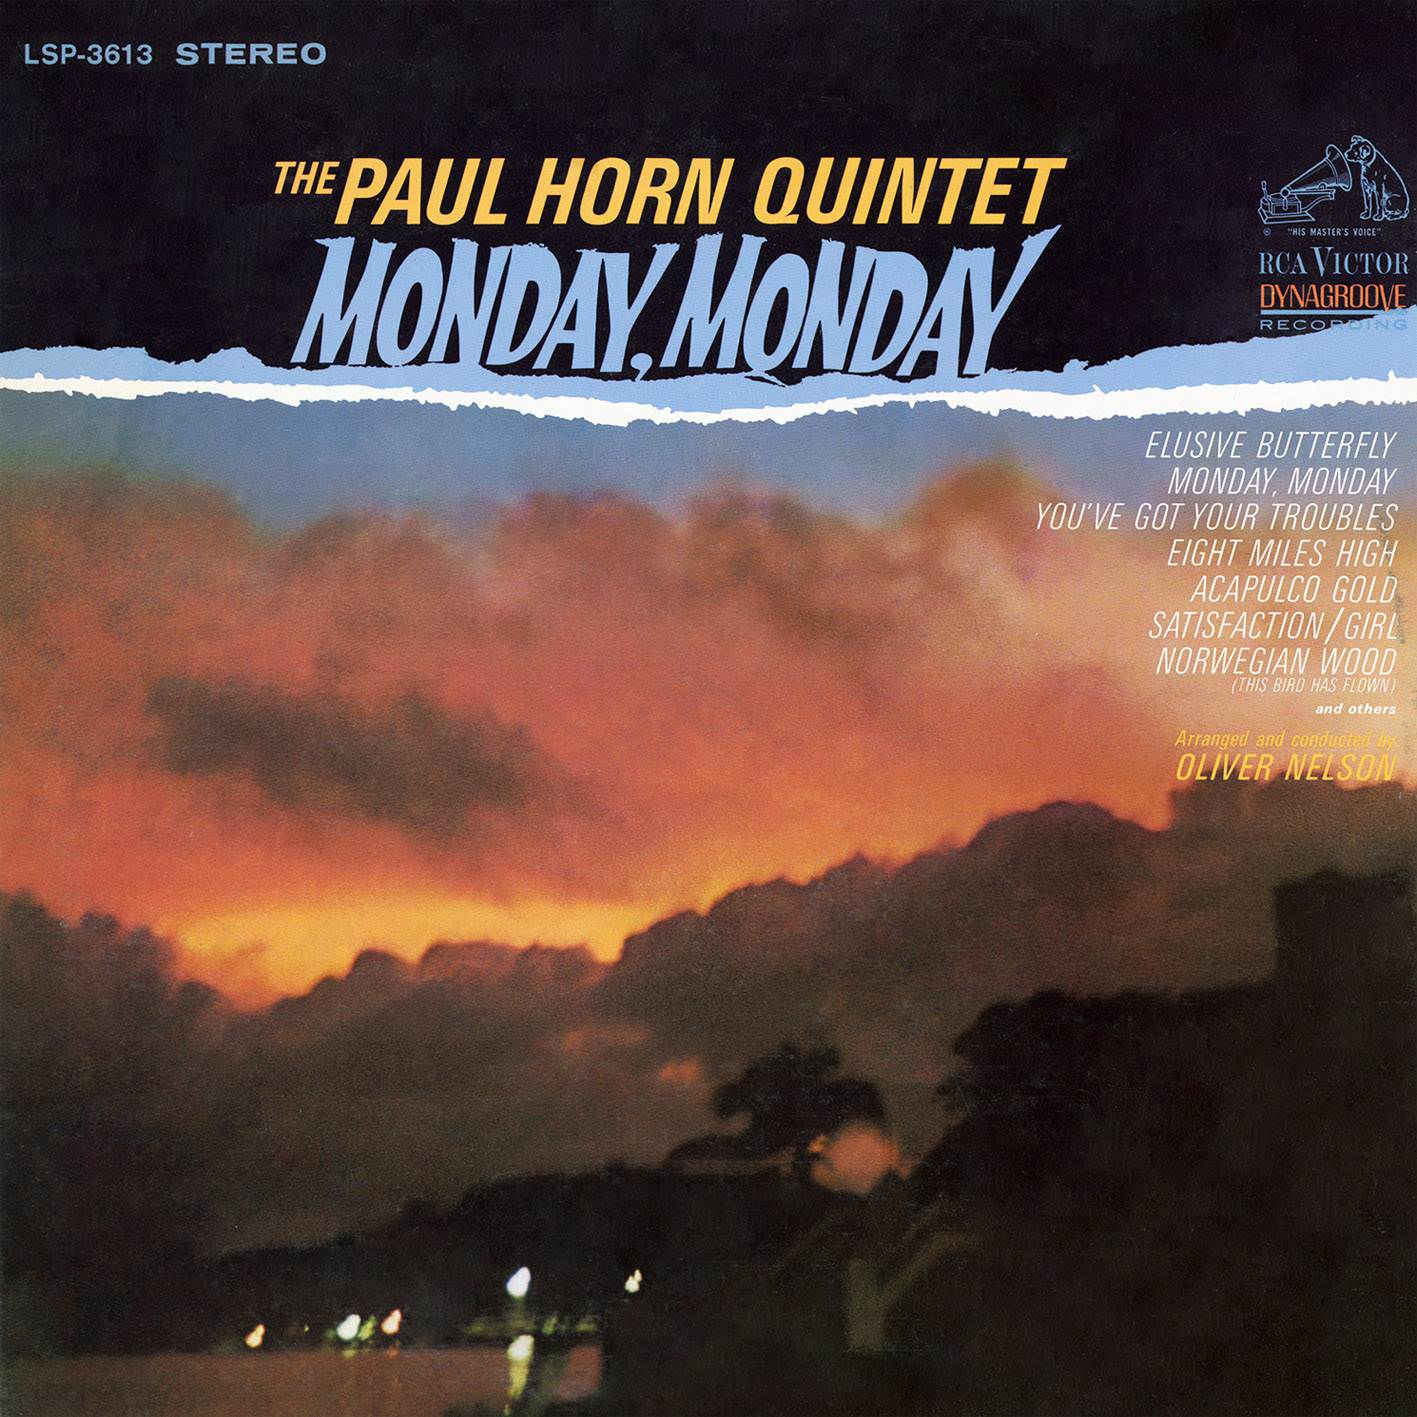 The Paul Horn Quintet – Monday, Monday (1966/2016) [AcousticSounds FLAC 24bit/192kHz]